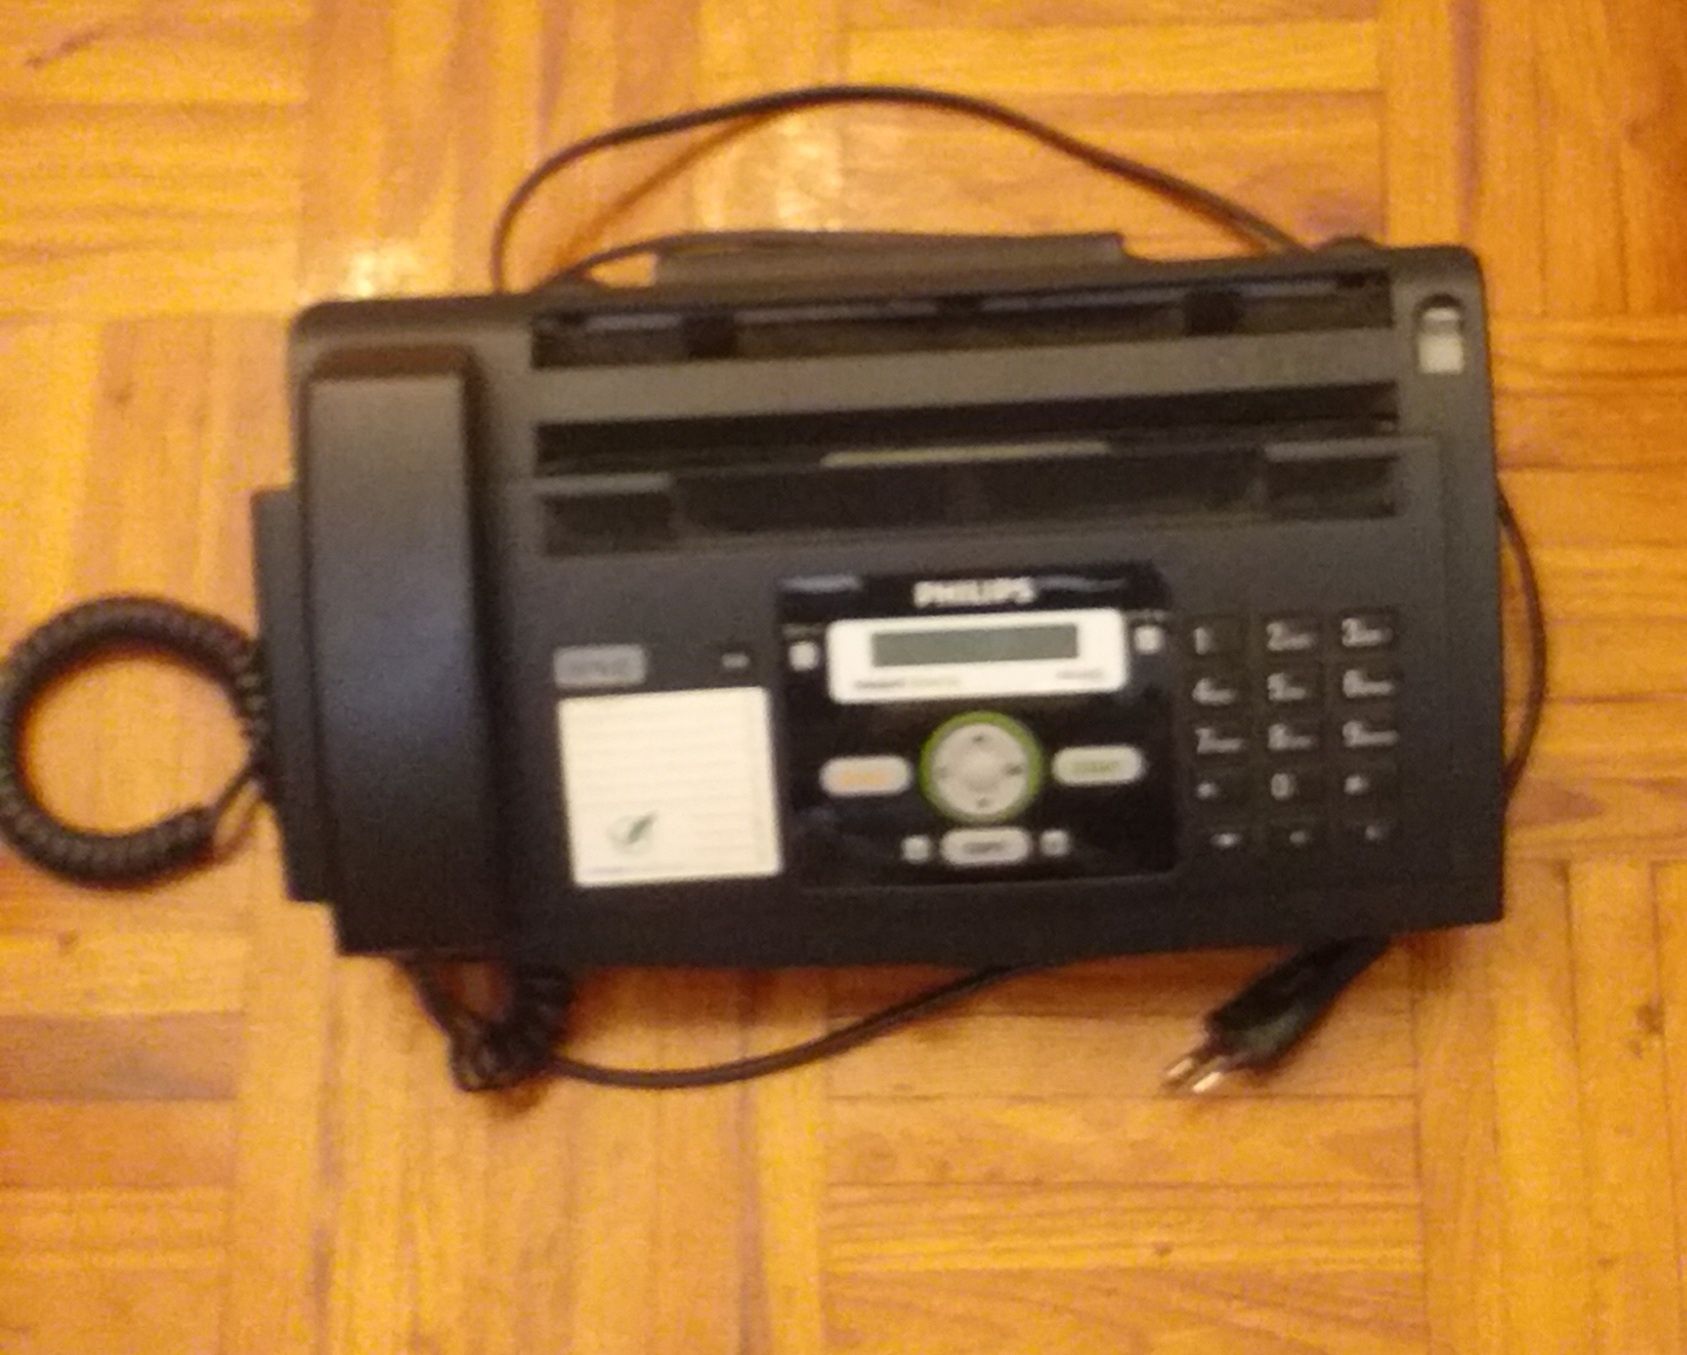 telefone fax fotocopiadora Philips Magic 5 eco usada em bom estado